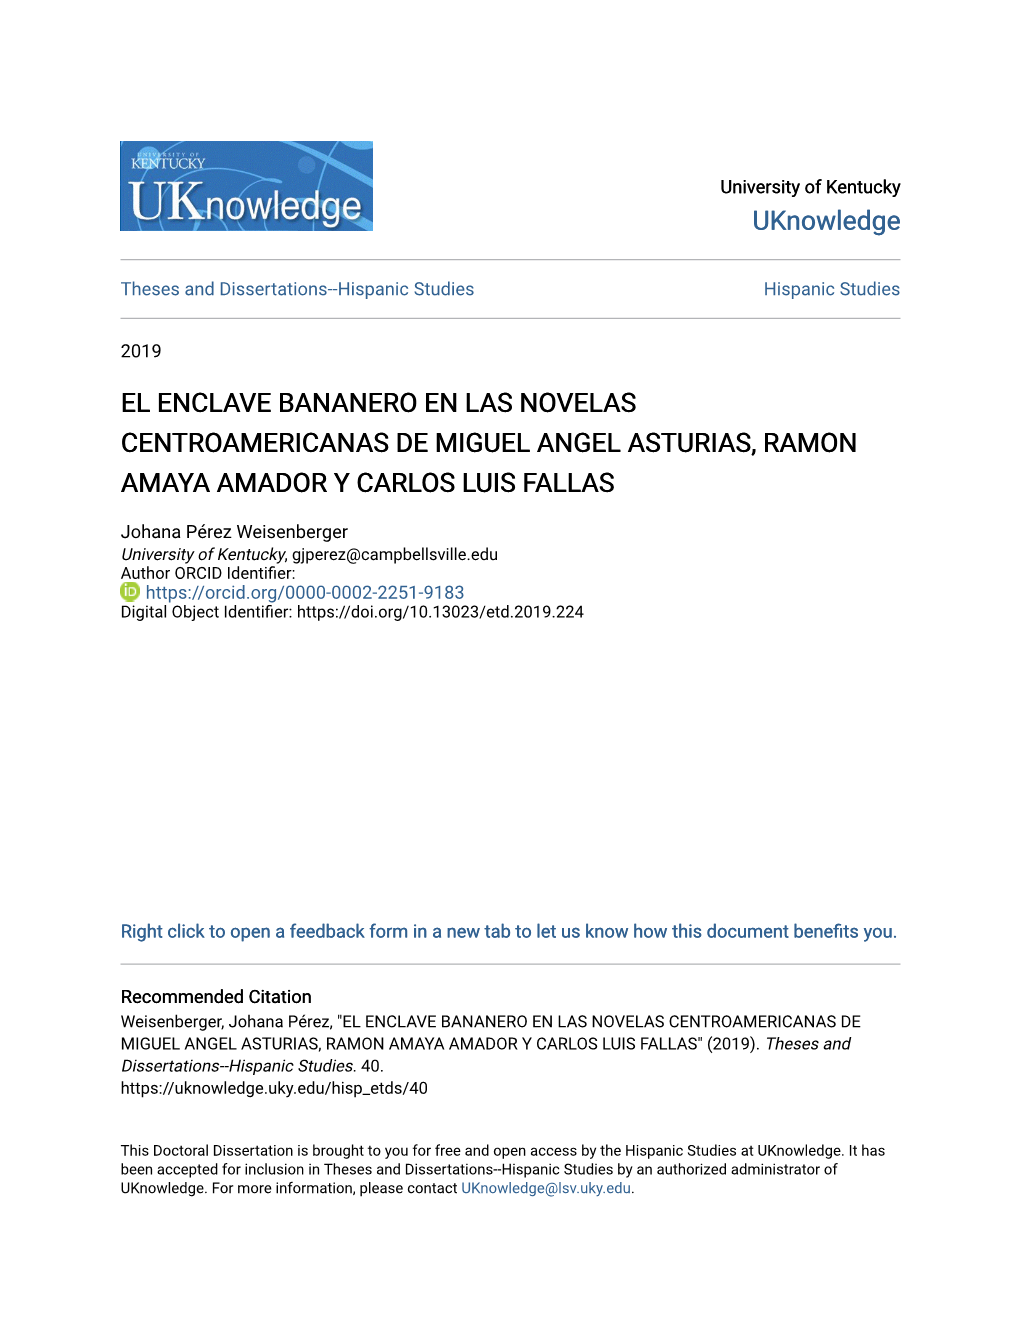 El Enclave Bananero En Las Novelas Centroamericanas De Miguel Angel Asturias, Ramon Amaya Amador Y Carlos Luis Fallas